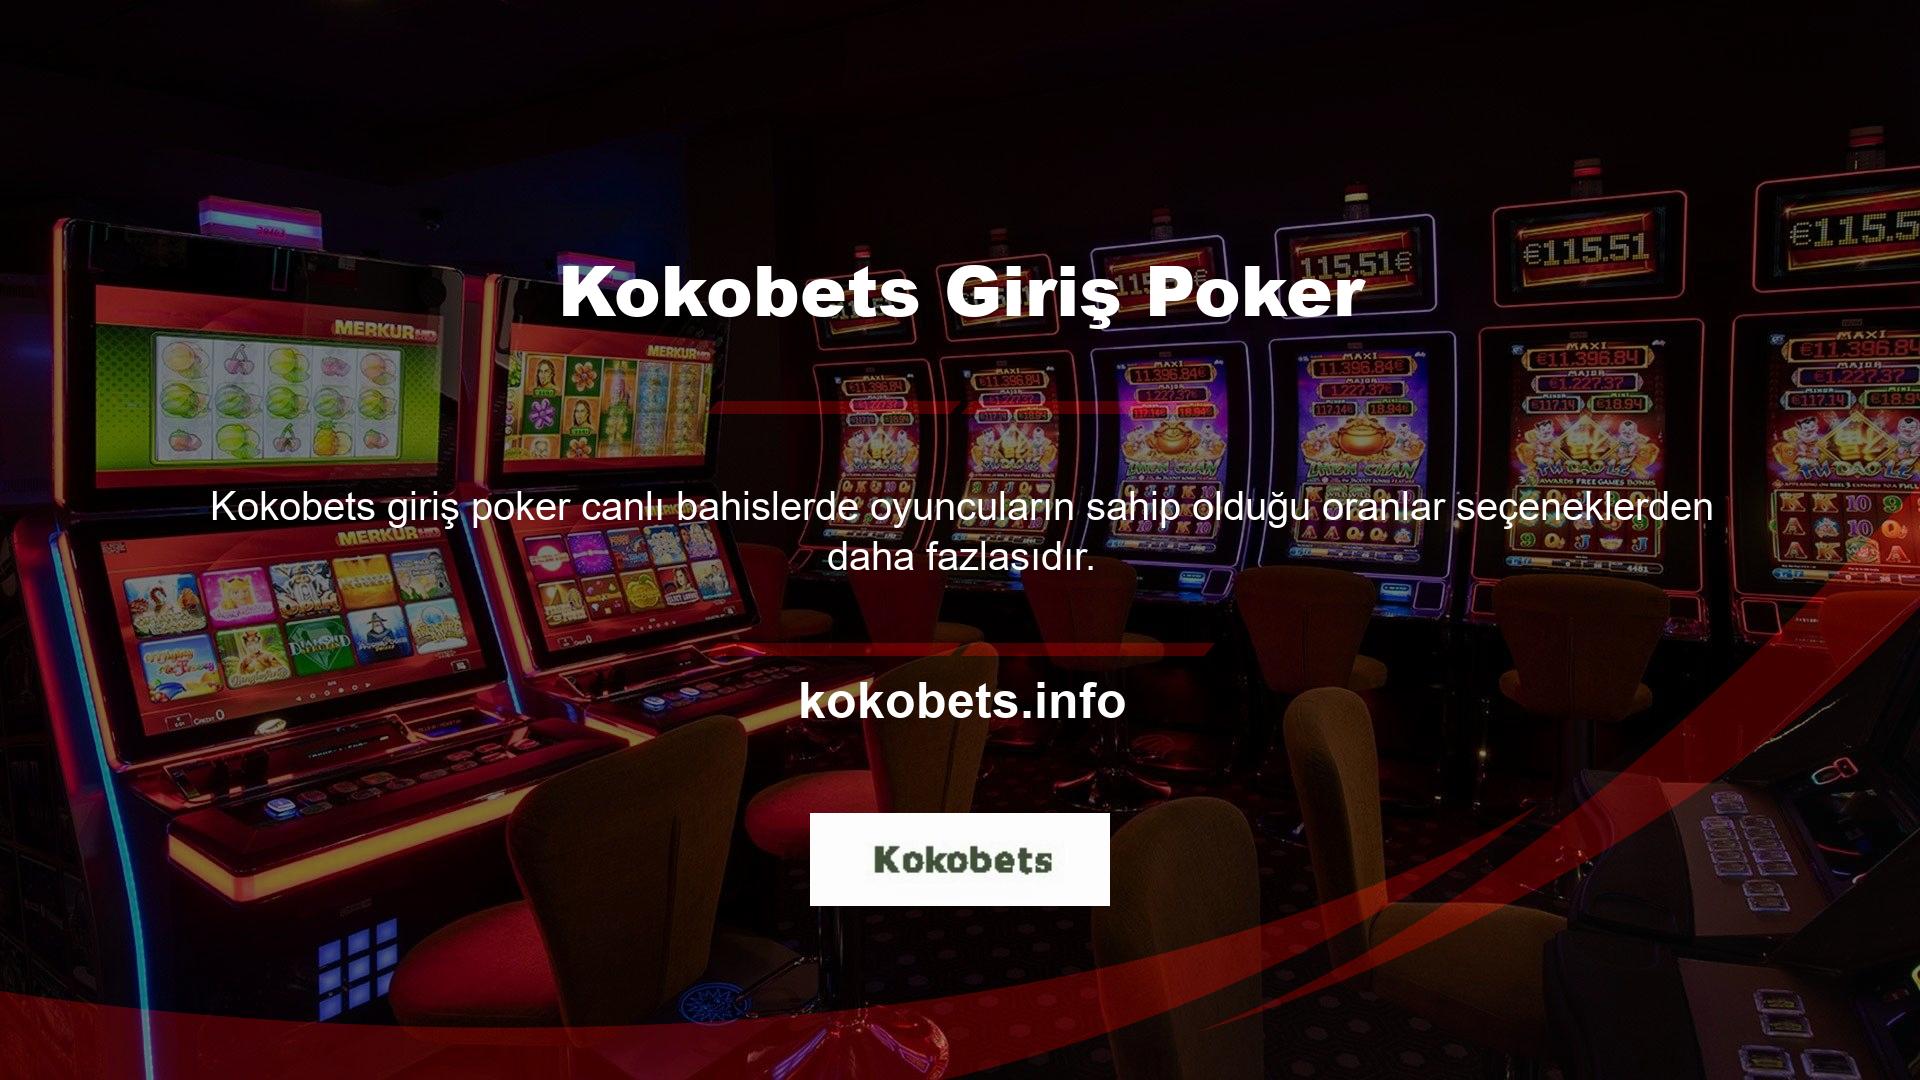 Kokobets Login Poker, casino sitesi için yeni bir adrese sahip lisanslı bir casino şirketidir